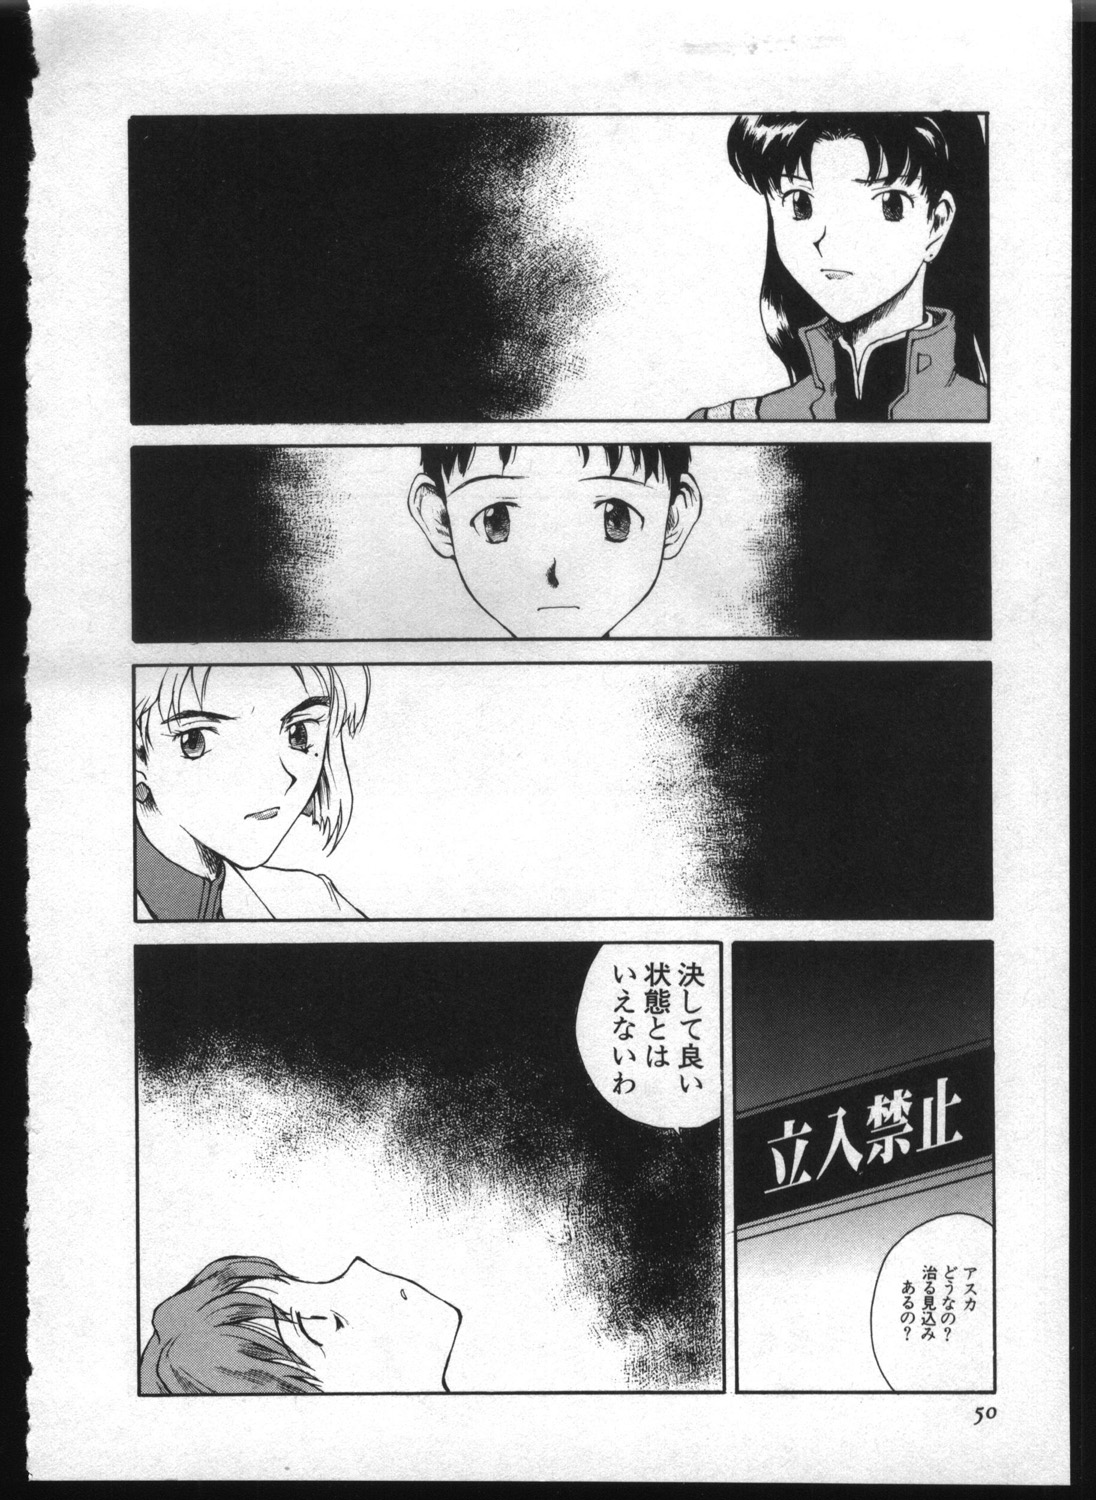 [Anthology] Shitsurakuen 7 | Paradise Lost 7 (Neon Genesis Evangelion) page 48 full